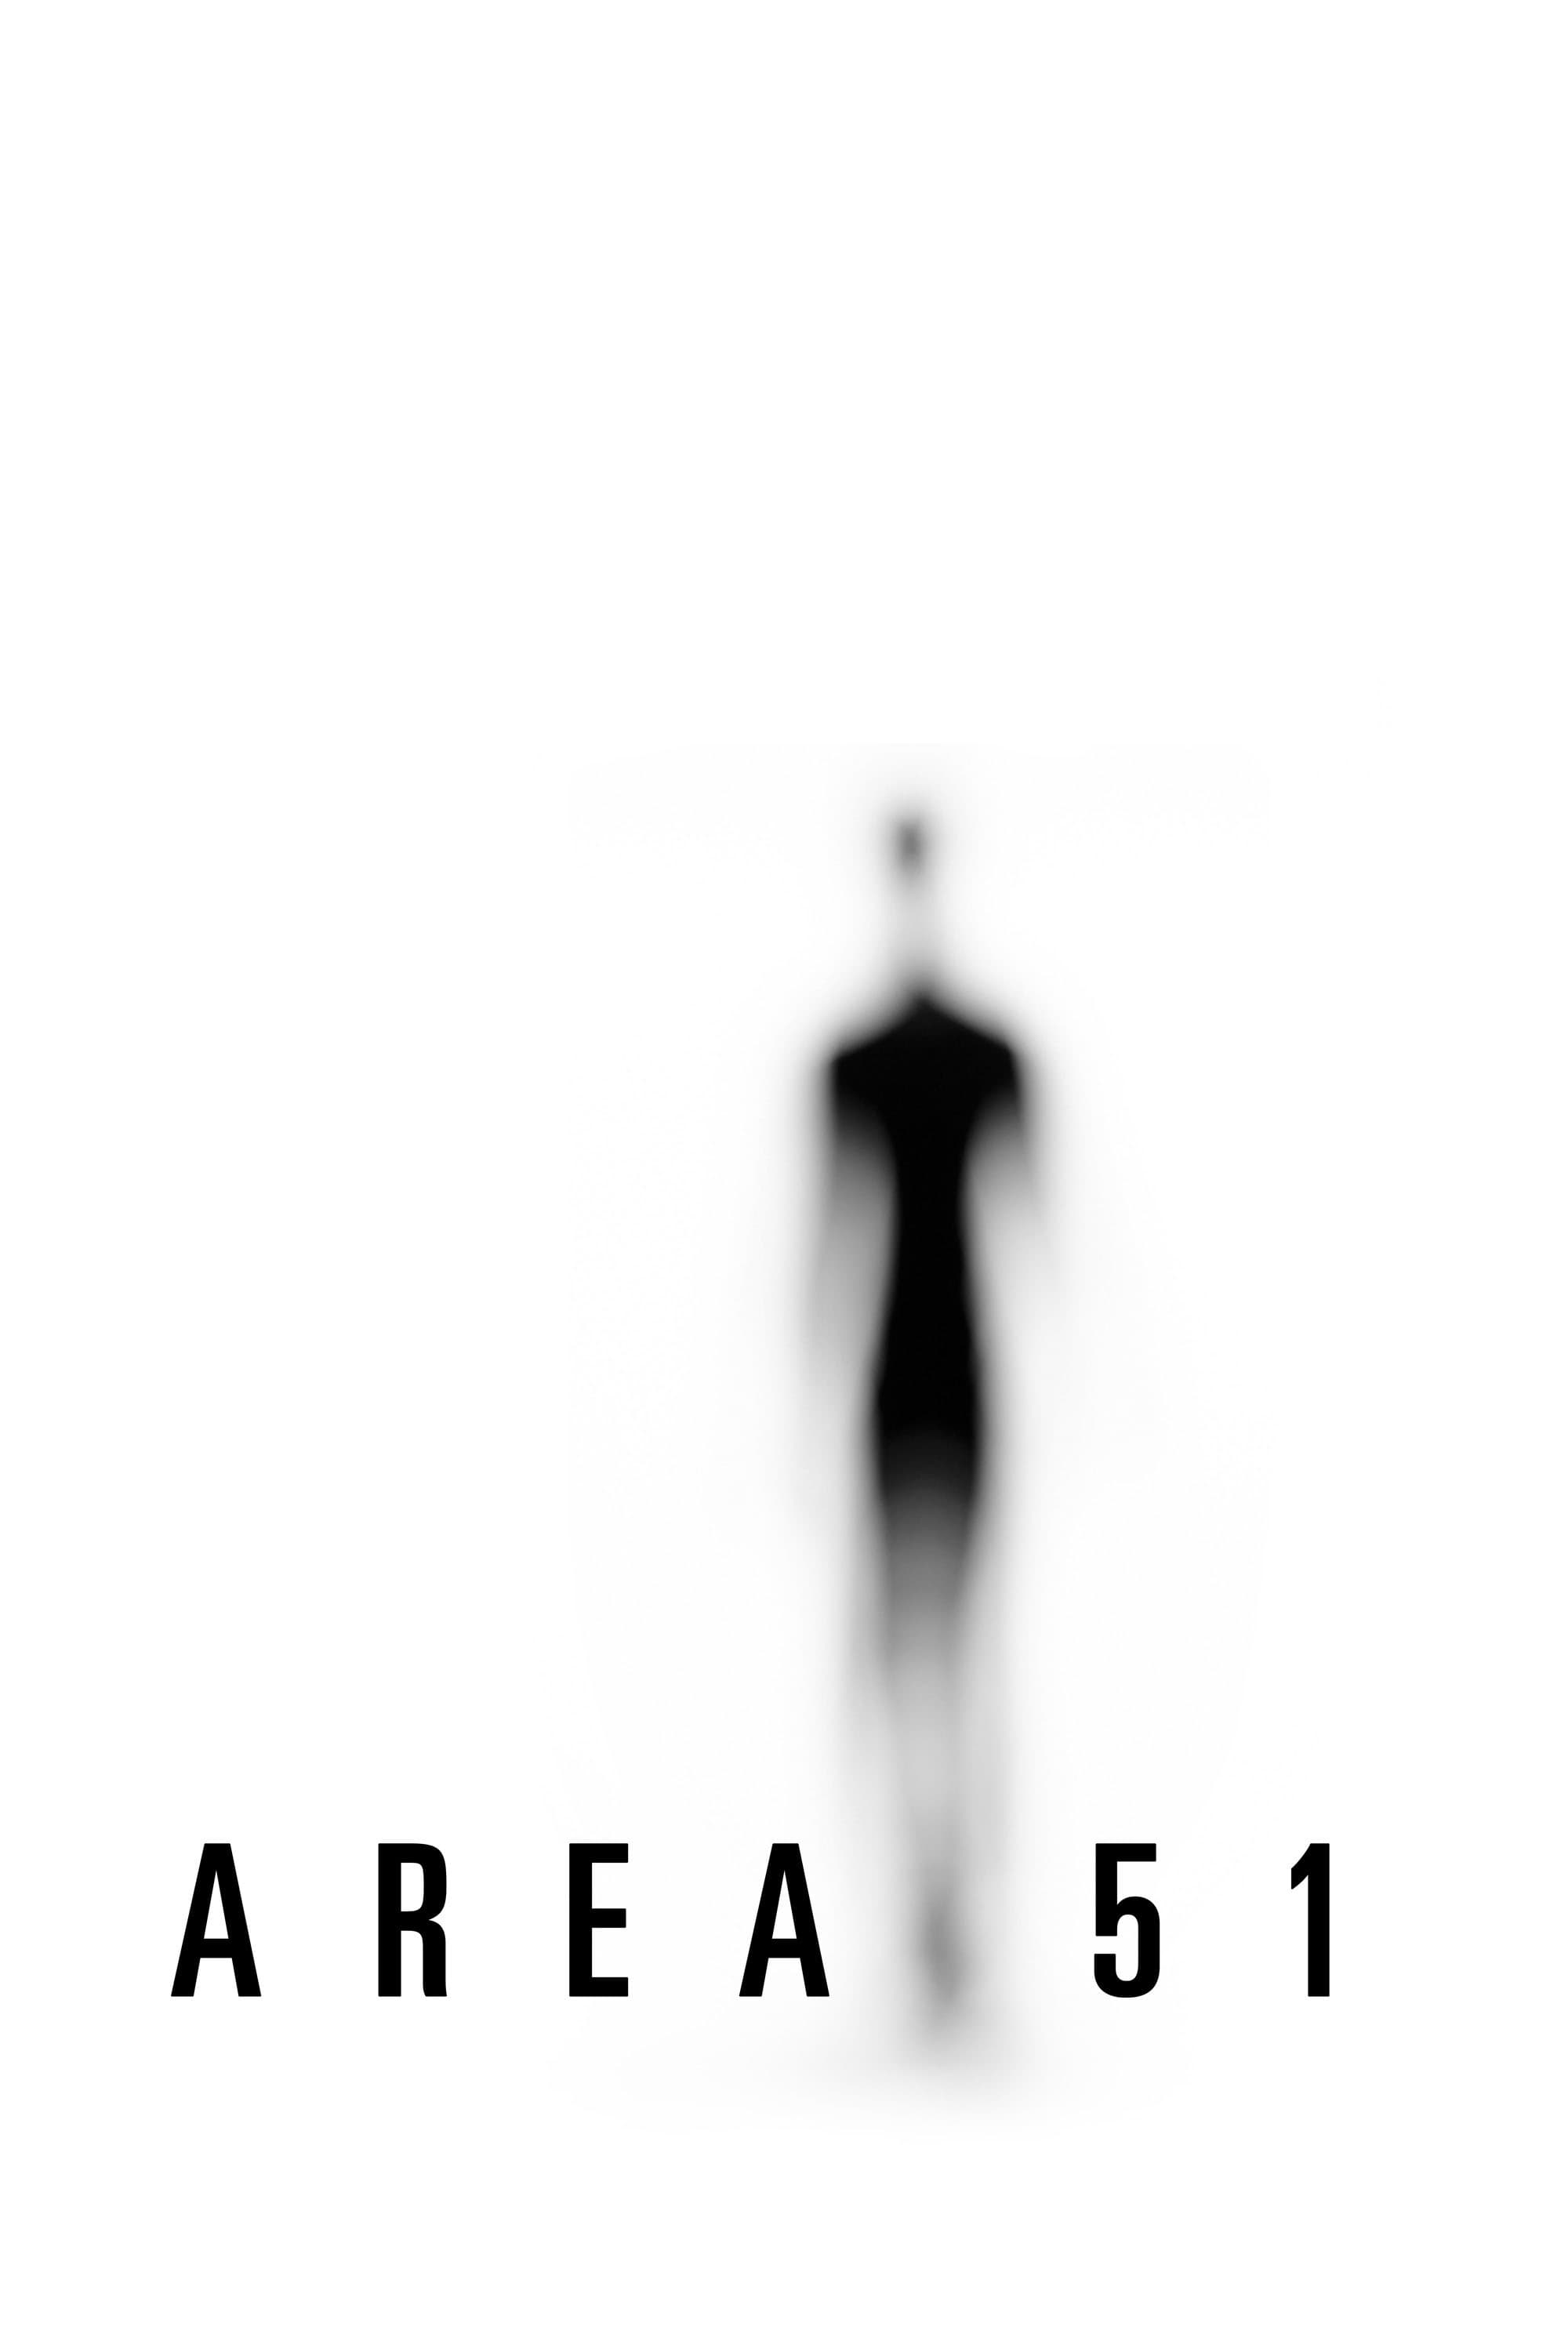 Área 51 (2015)